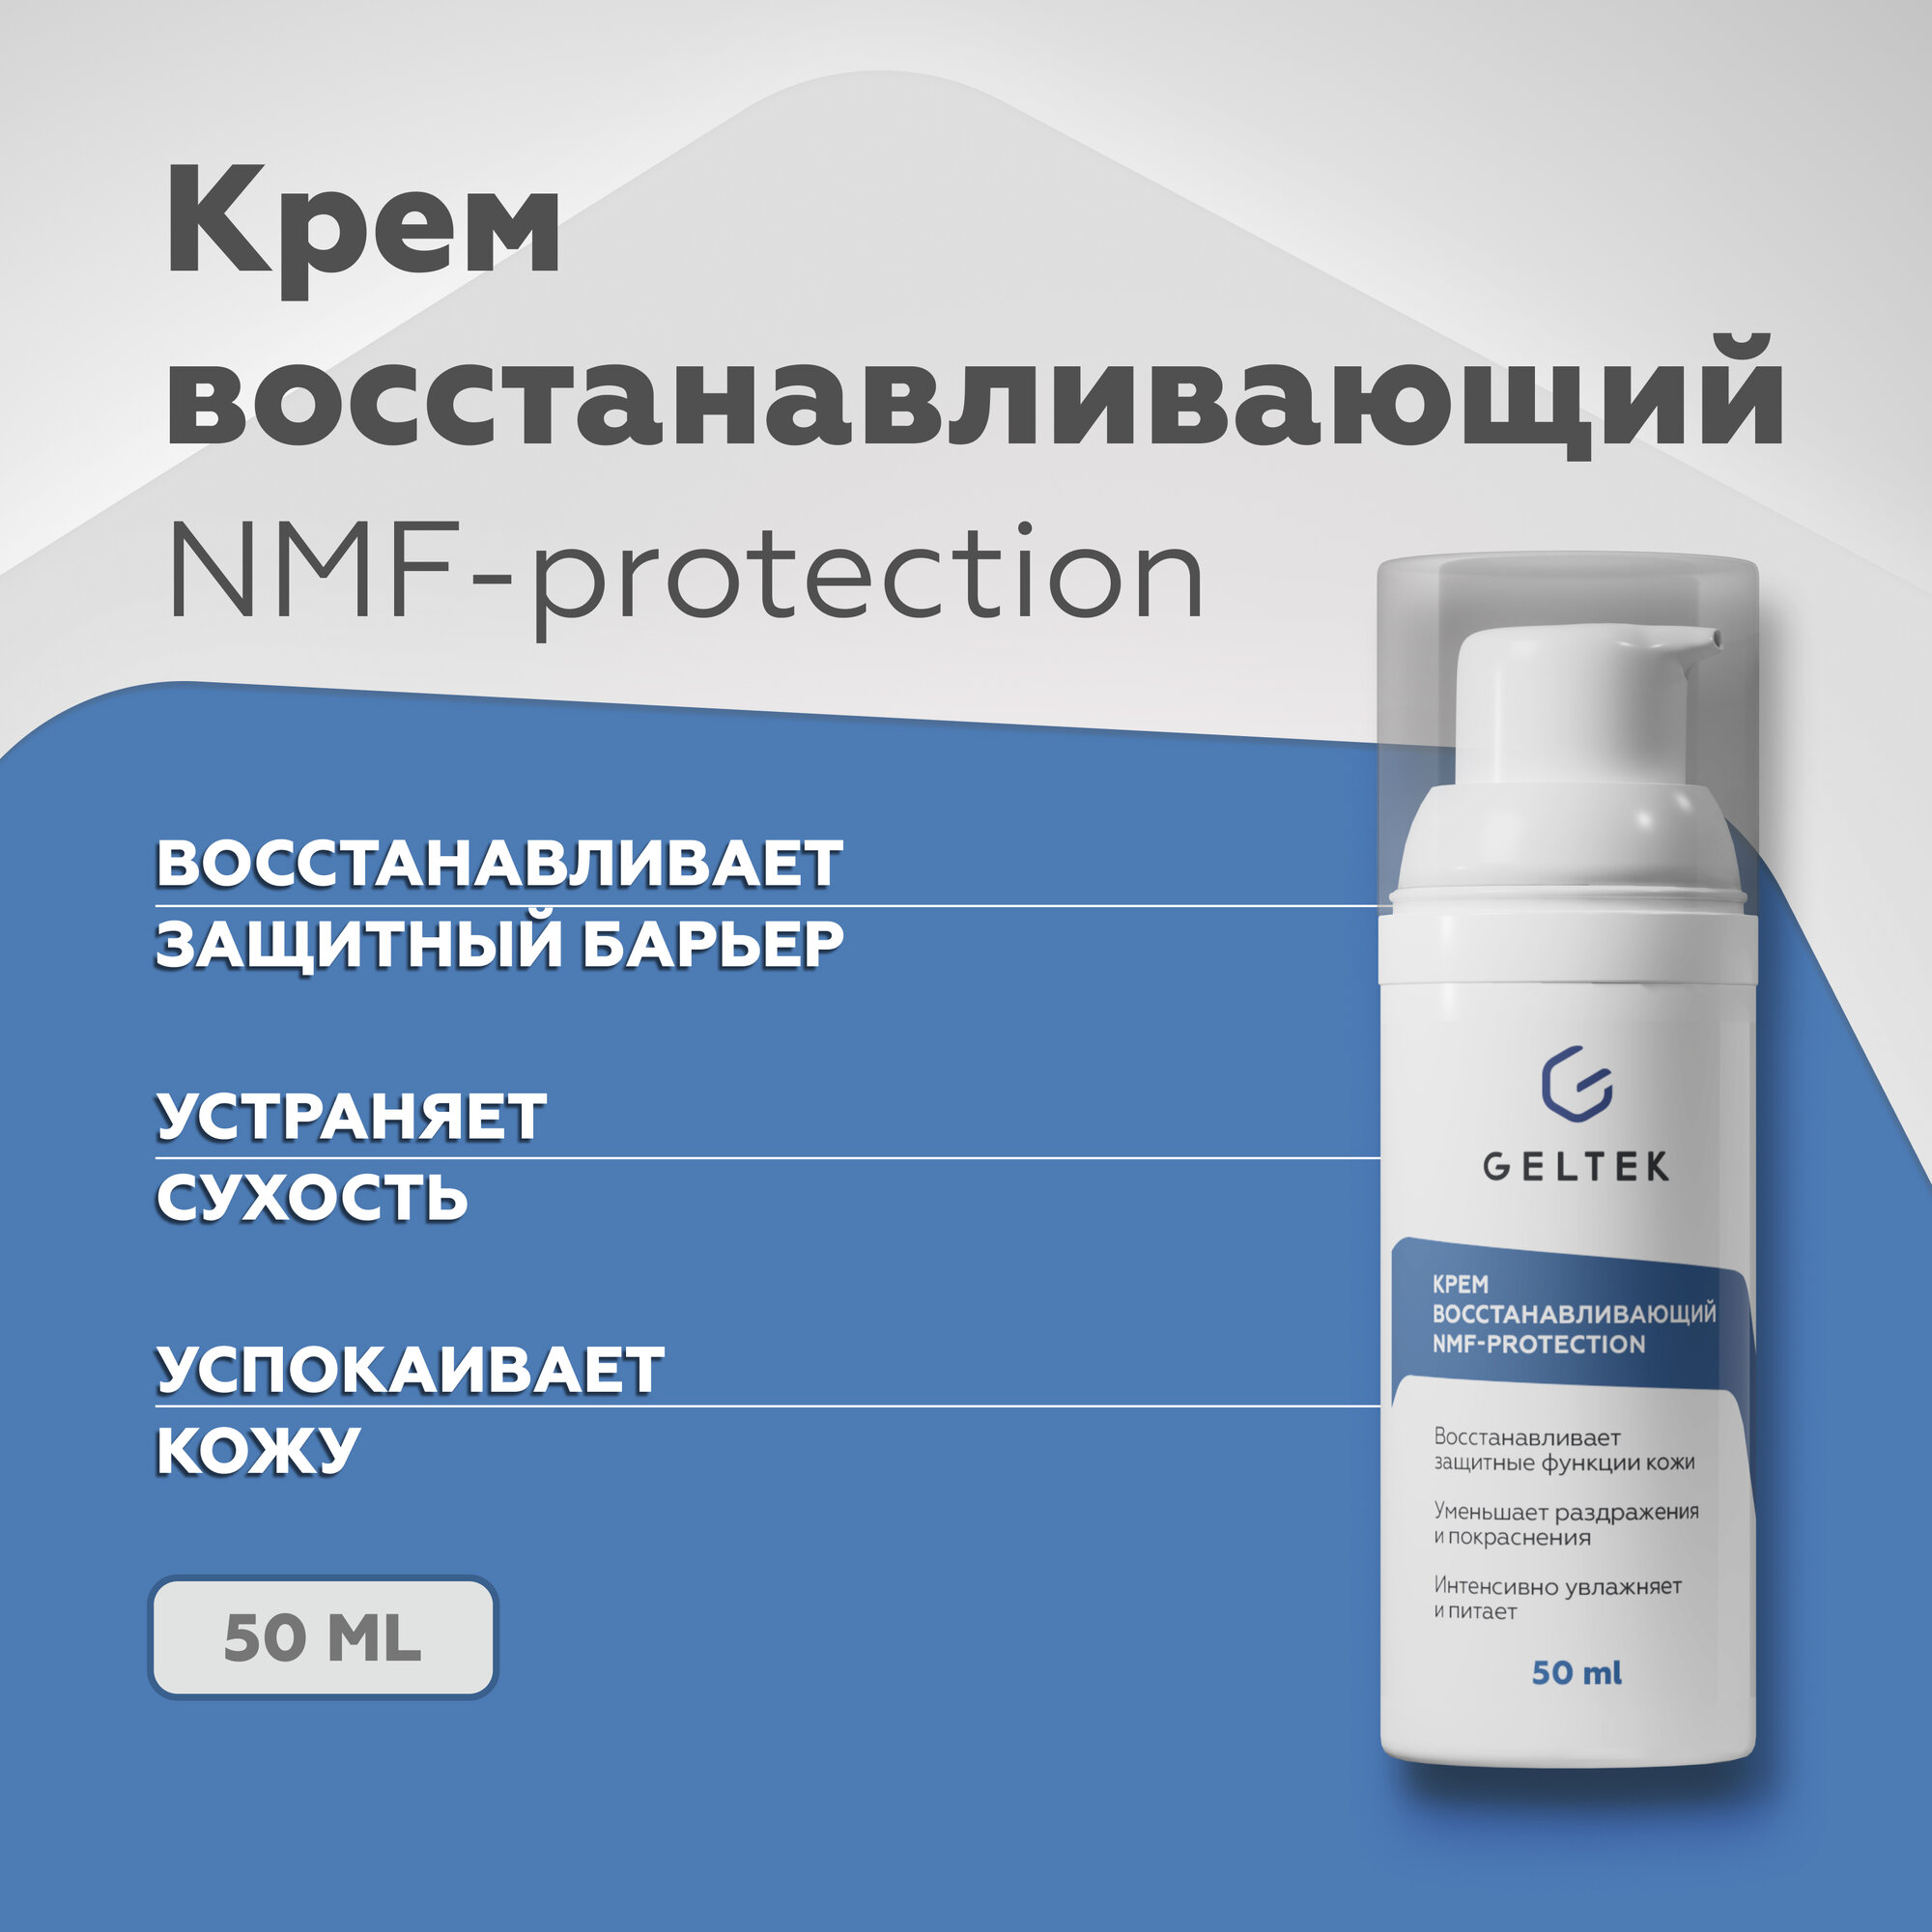 Увлажняющий крем для лица Гельтек восстанавливающий NMF-protection с аминокислотами и биоцерамидами, 50 мл